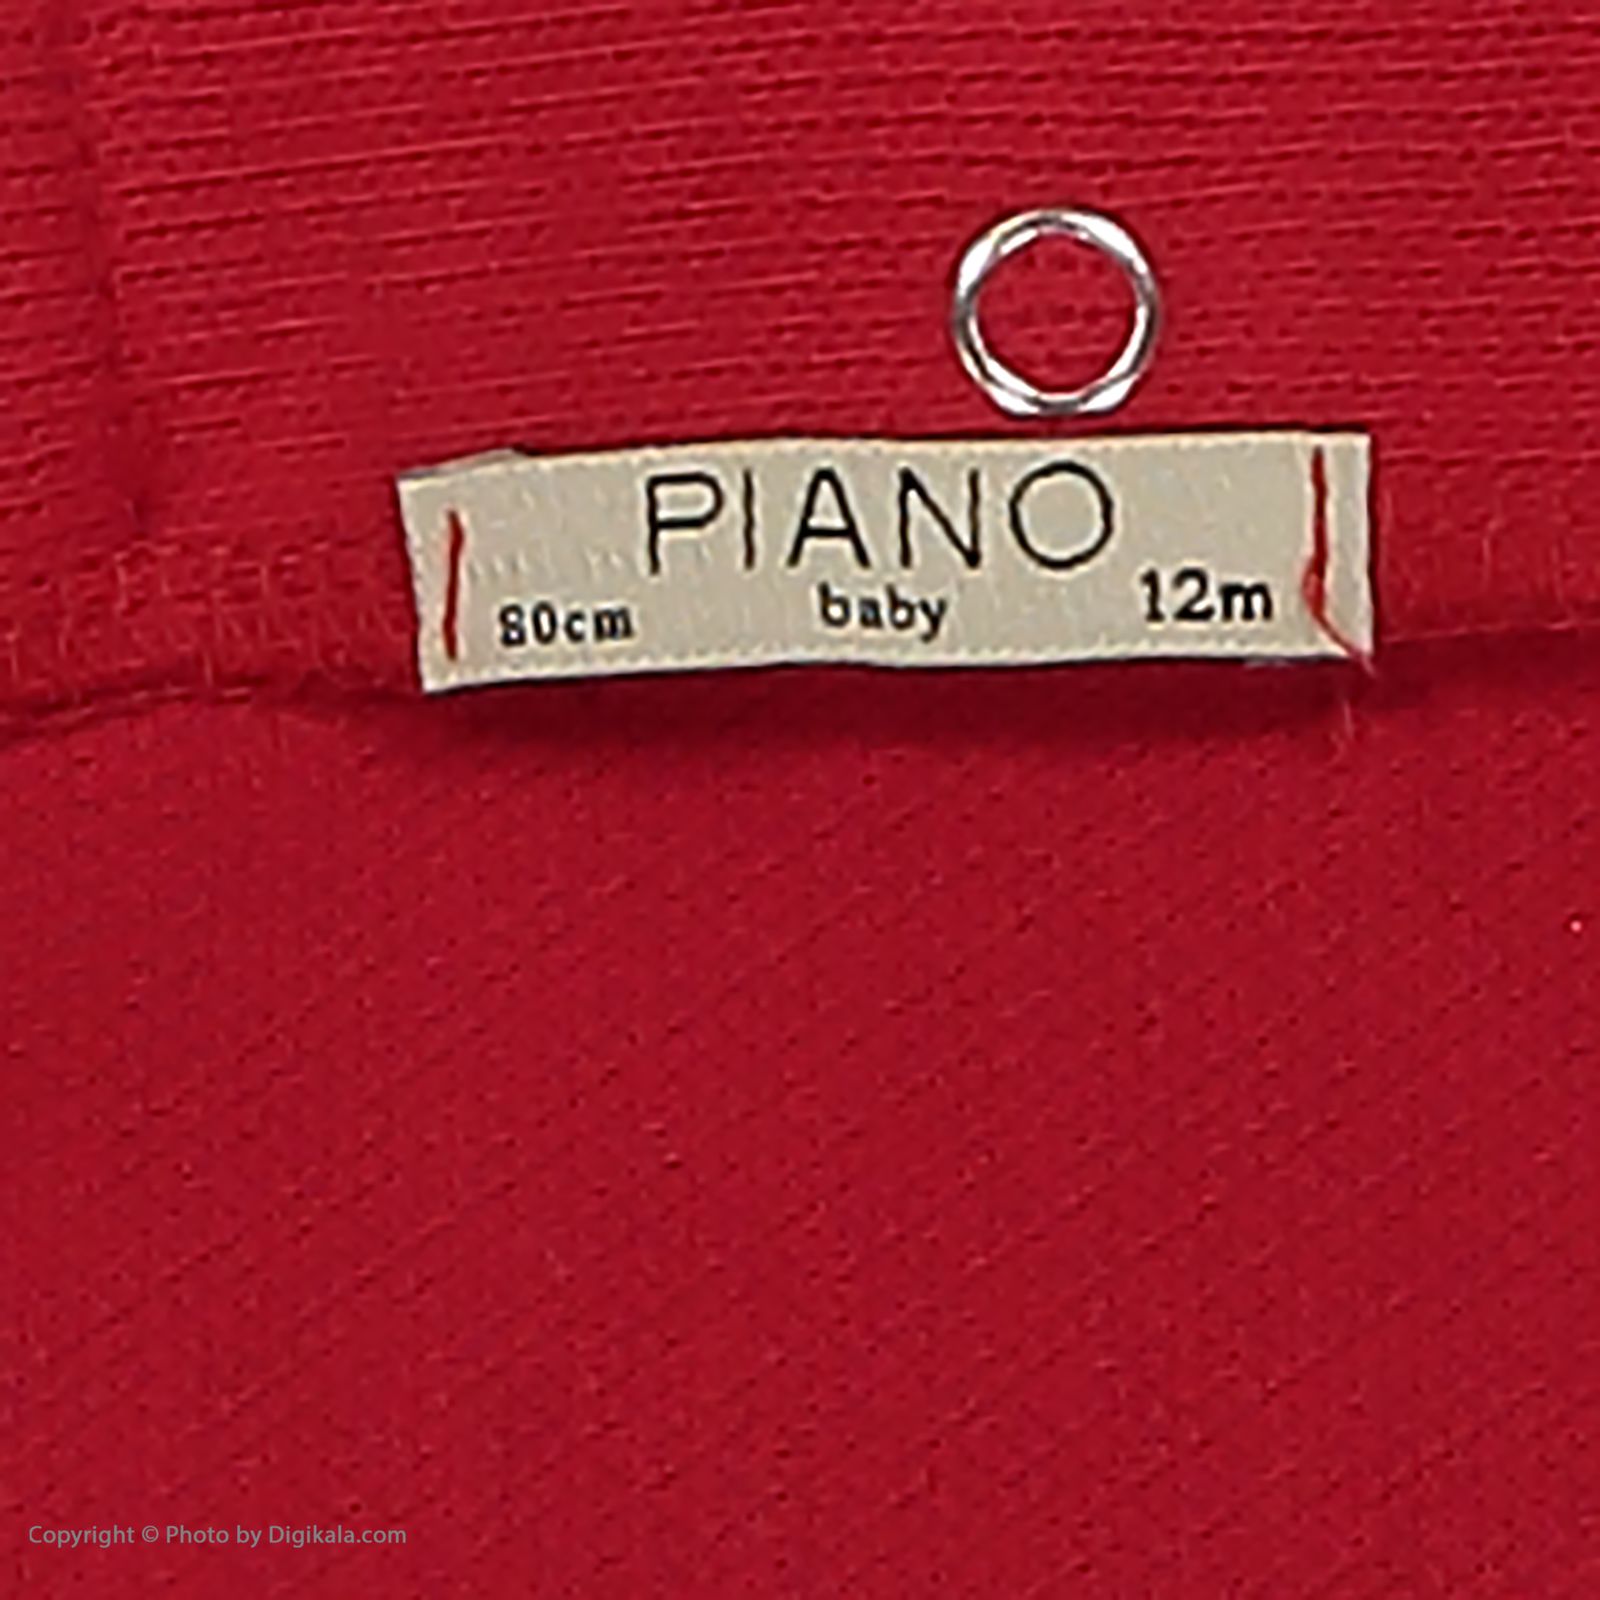 سویشرت نوزادی پیانو مدل 1009009901736-72 -  - 5